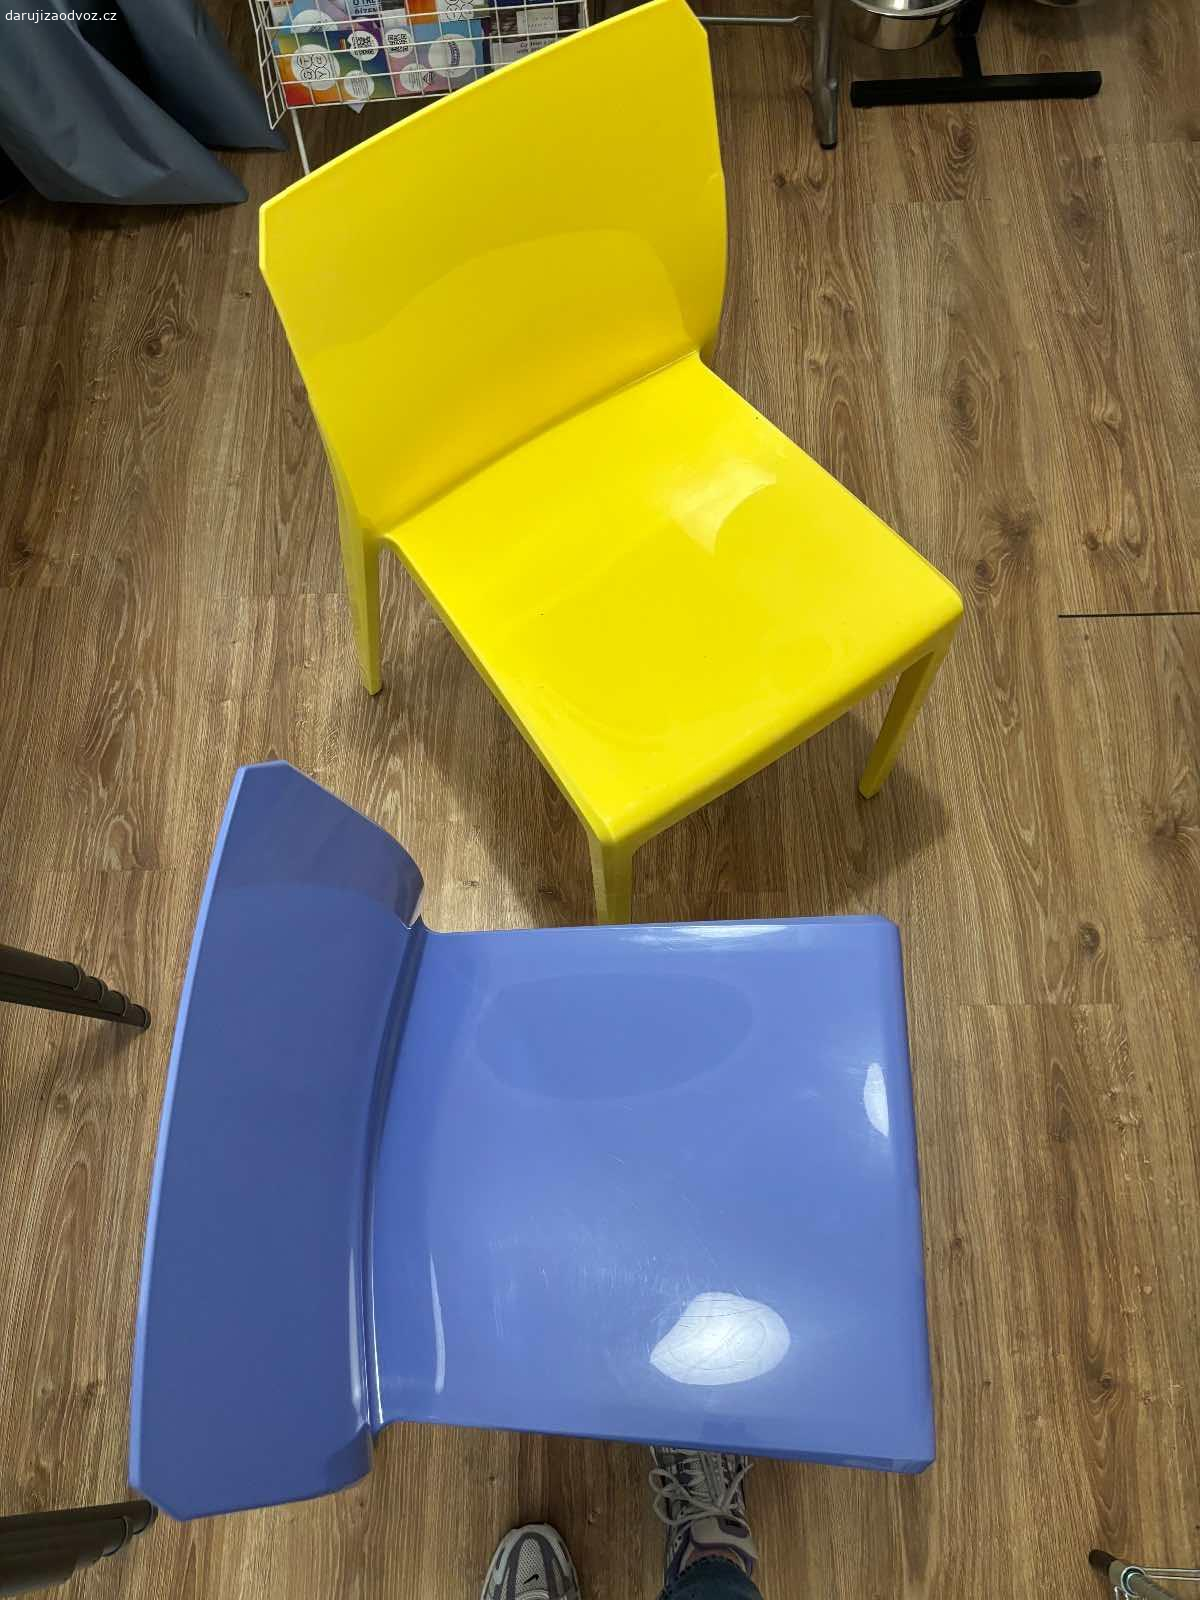 daruji židle. barevné židle - 2ks modrá, 1ks žlutá, 1ks červená
plastové židle, dají se skládat na sebe
za odvoz Praha 1
není podmínkou vzít všechny